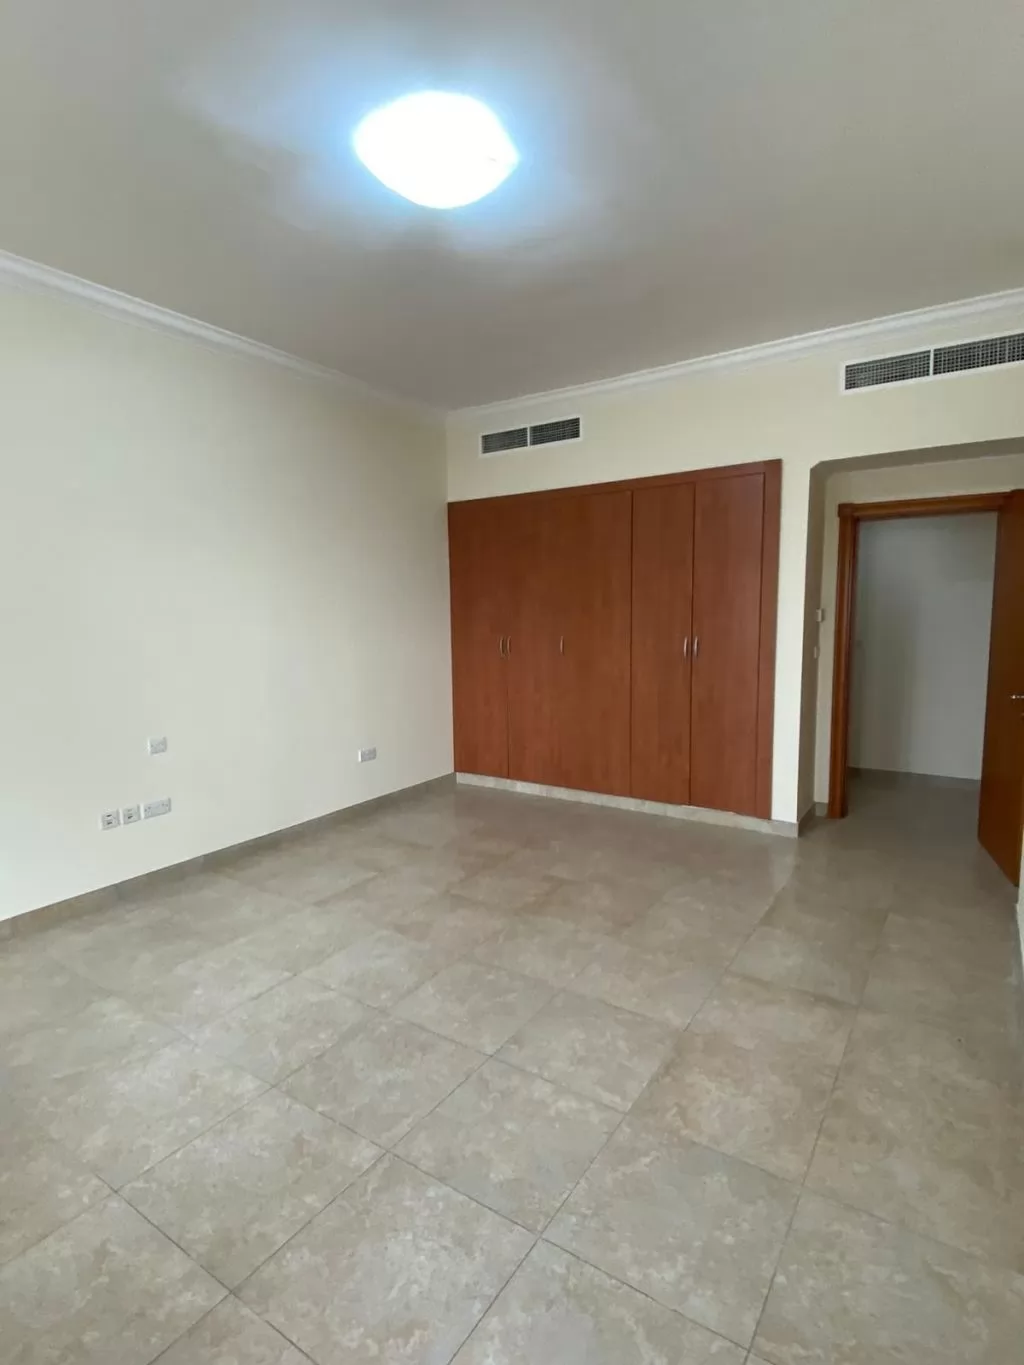 Résidentiel Propriété prête 2 chambres S / F Appartement  à vendre au Doha #14962 - 1  image 